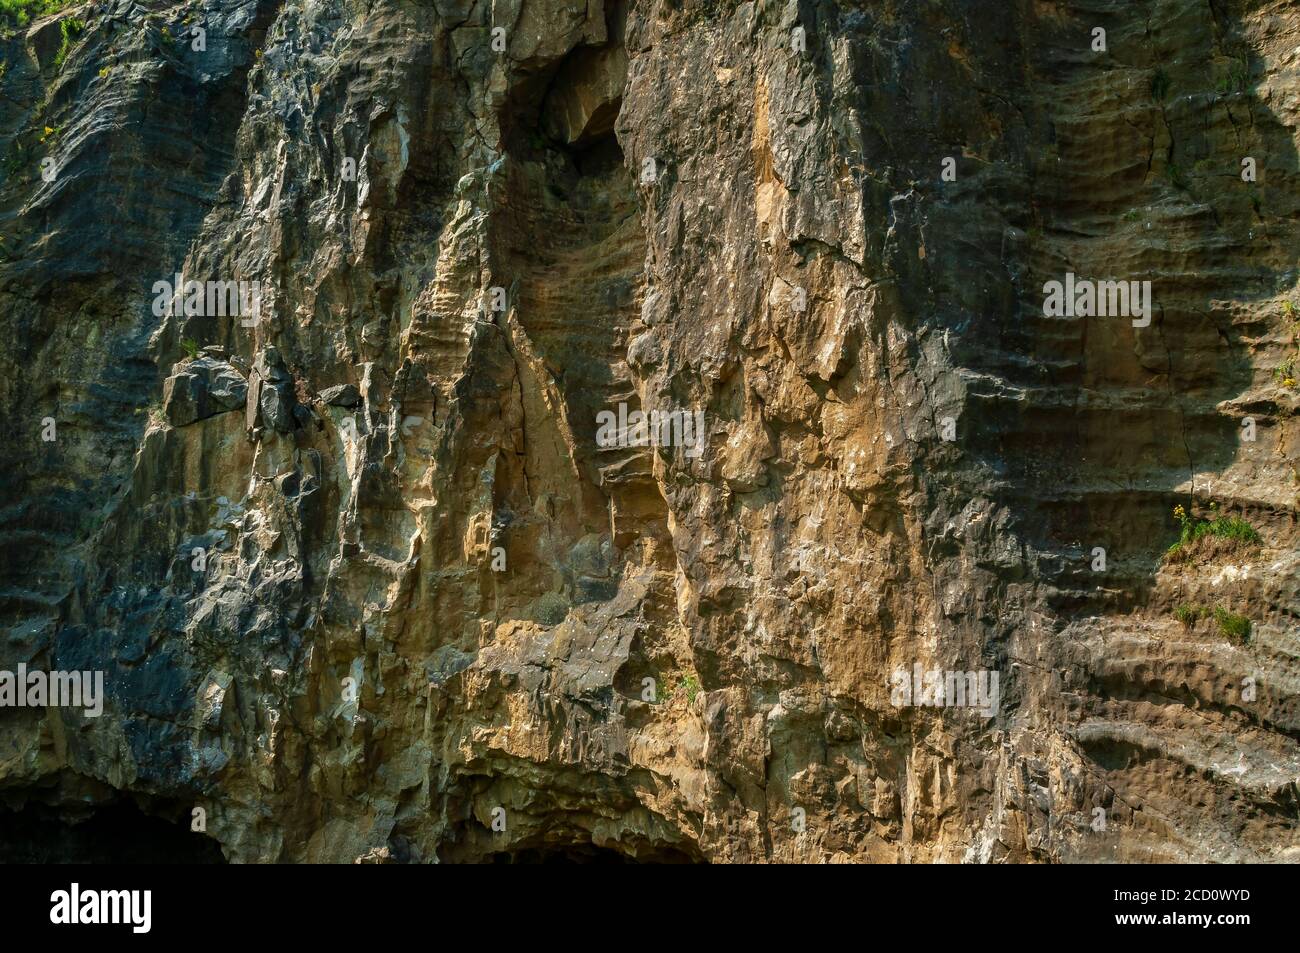 Système naturel de cavernes tronqué par l'exploitation de carrières au Dirtlow Pit, Dirtlow Rake près de Castleton, Derbyshire. Cavités veineuses verticales avec nervures horizontales Banque D'Images